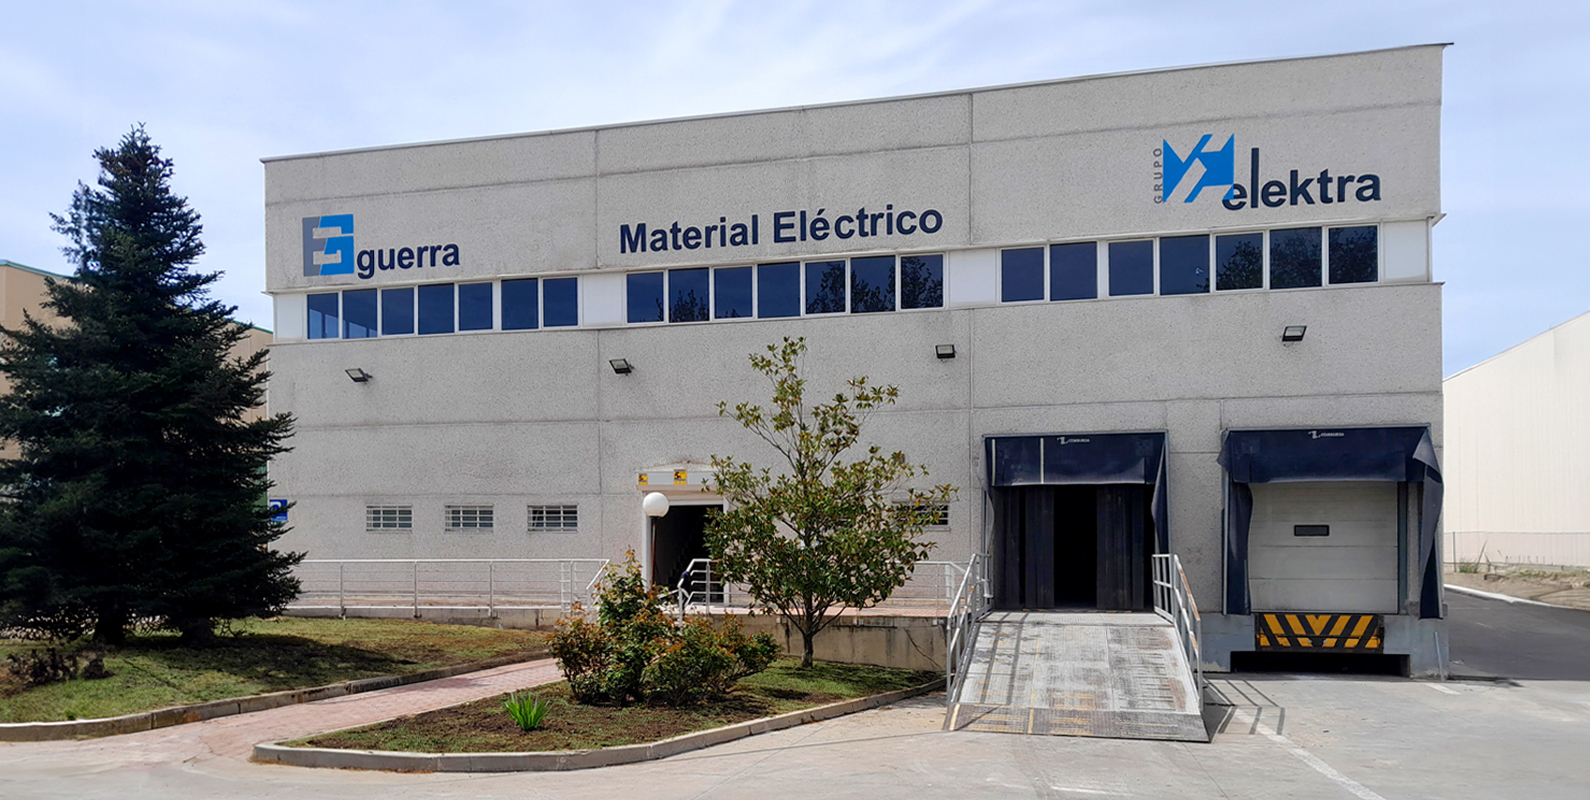 Electricidad Guerra MADRID - Store - Grupo Elektra